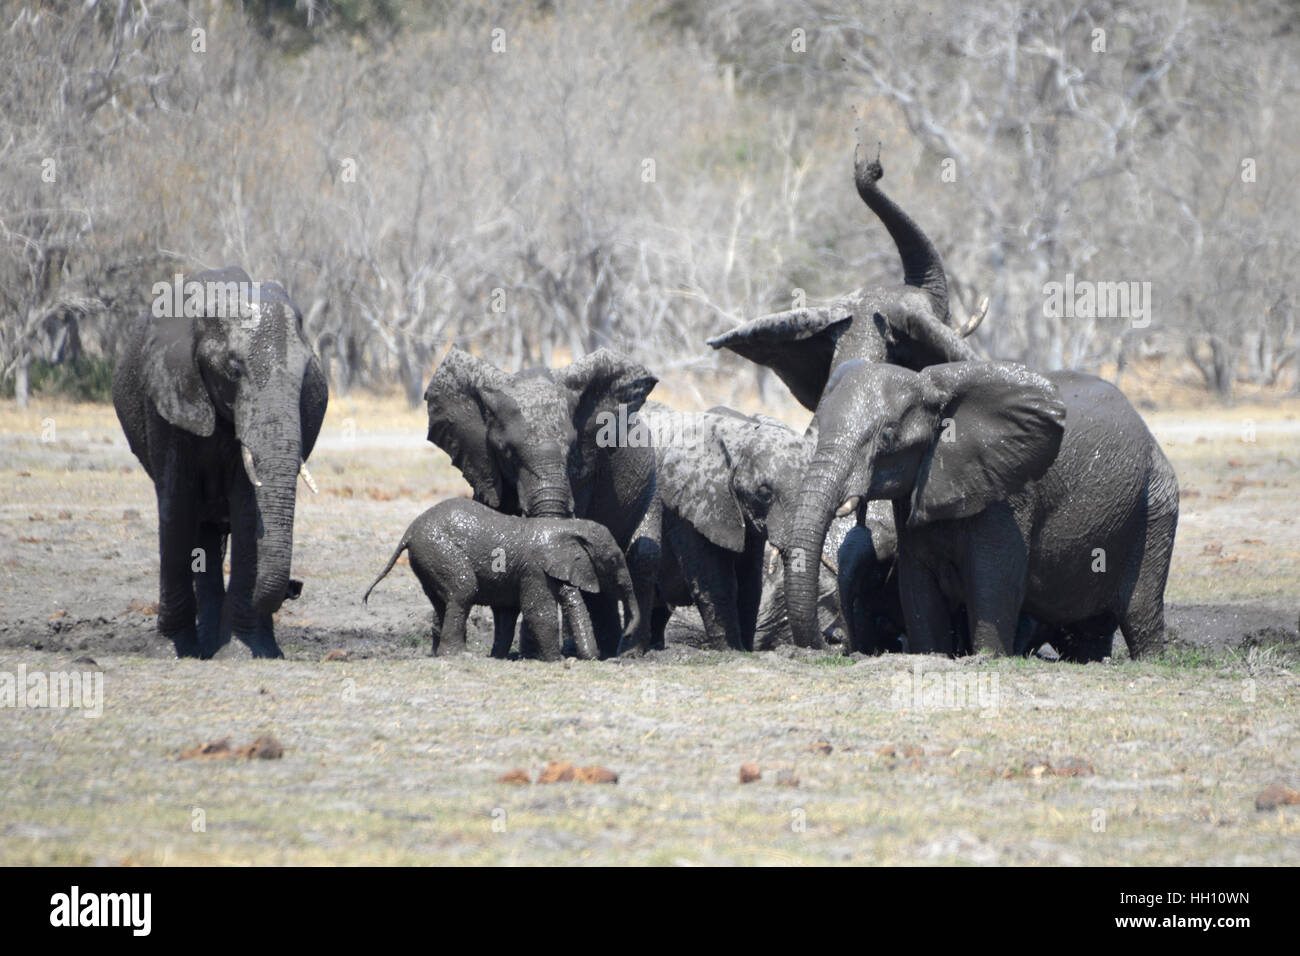 Adulto elefanti africani con vitello di fango e bagni di fango schizzare in aria Foto Stock